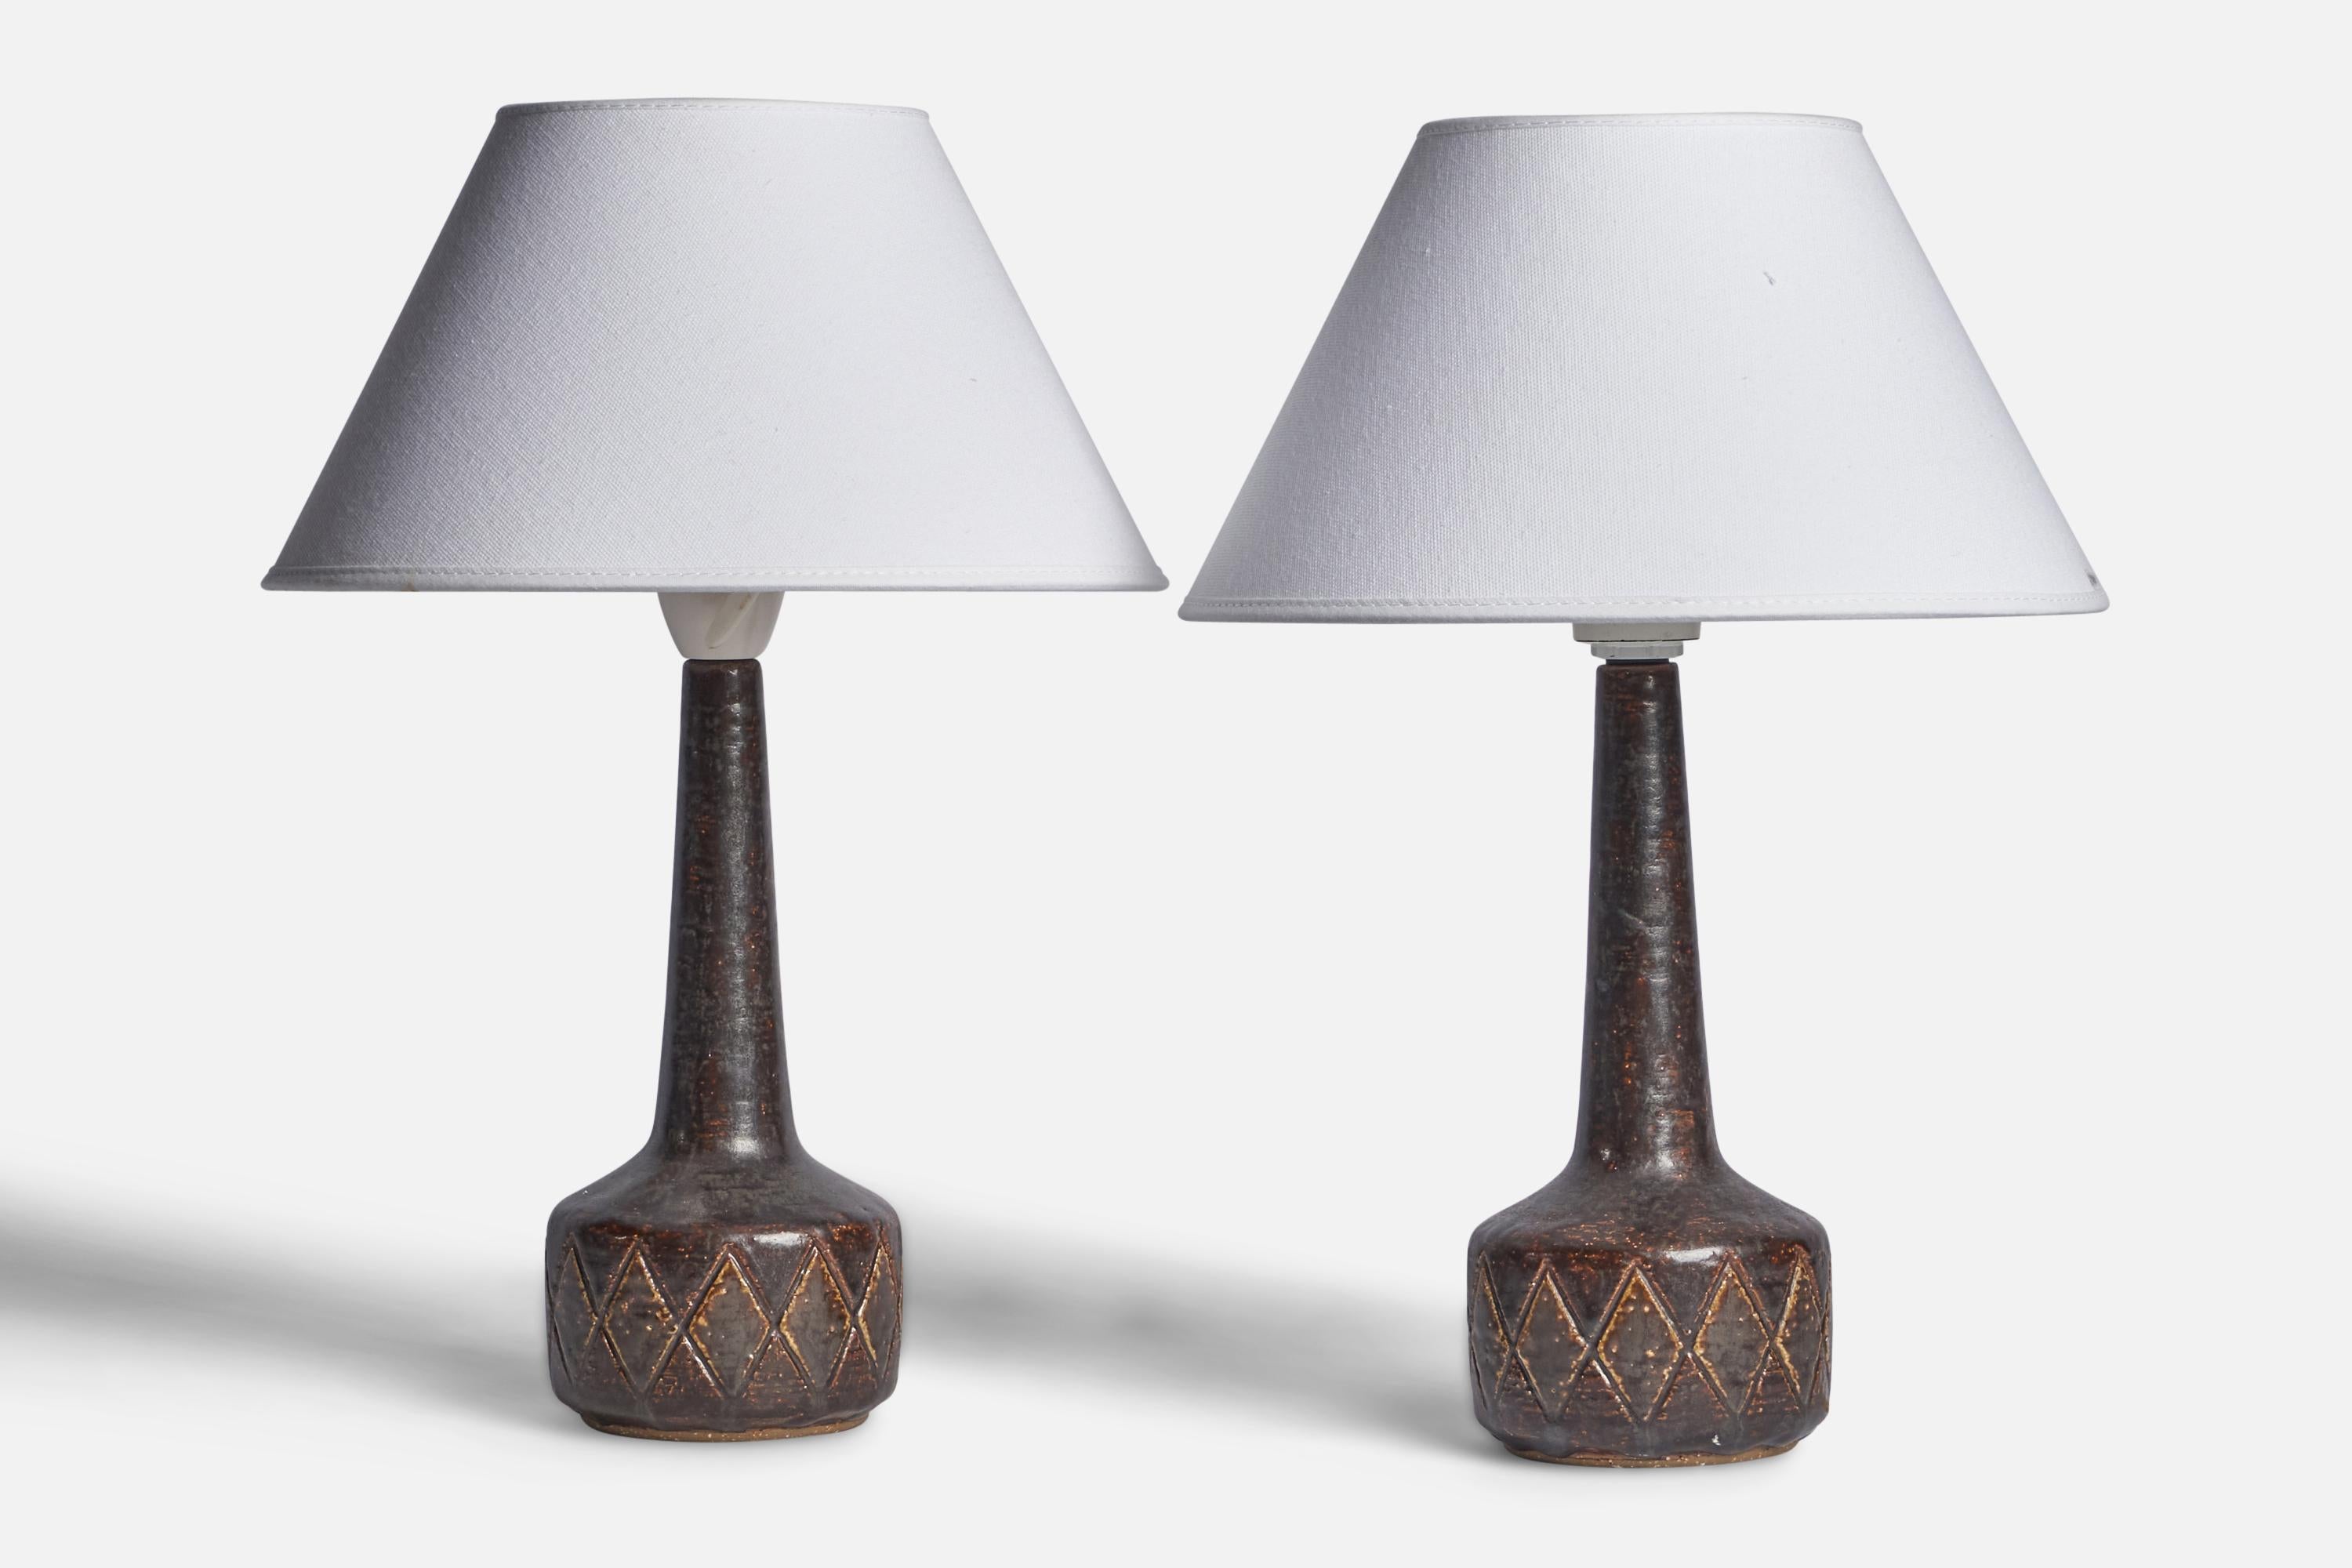 Paire de lampes de table en grès incisé à glaçure brune, conçues par Per & Annelise Linneman-Schmidt et produites par Palshus, Danemark, années 1960.

Dimensions de la lampe (pouces) : 11